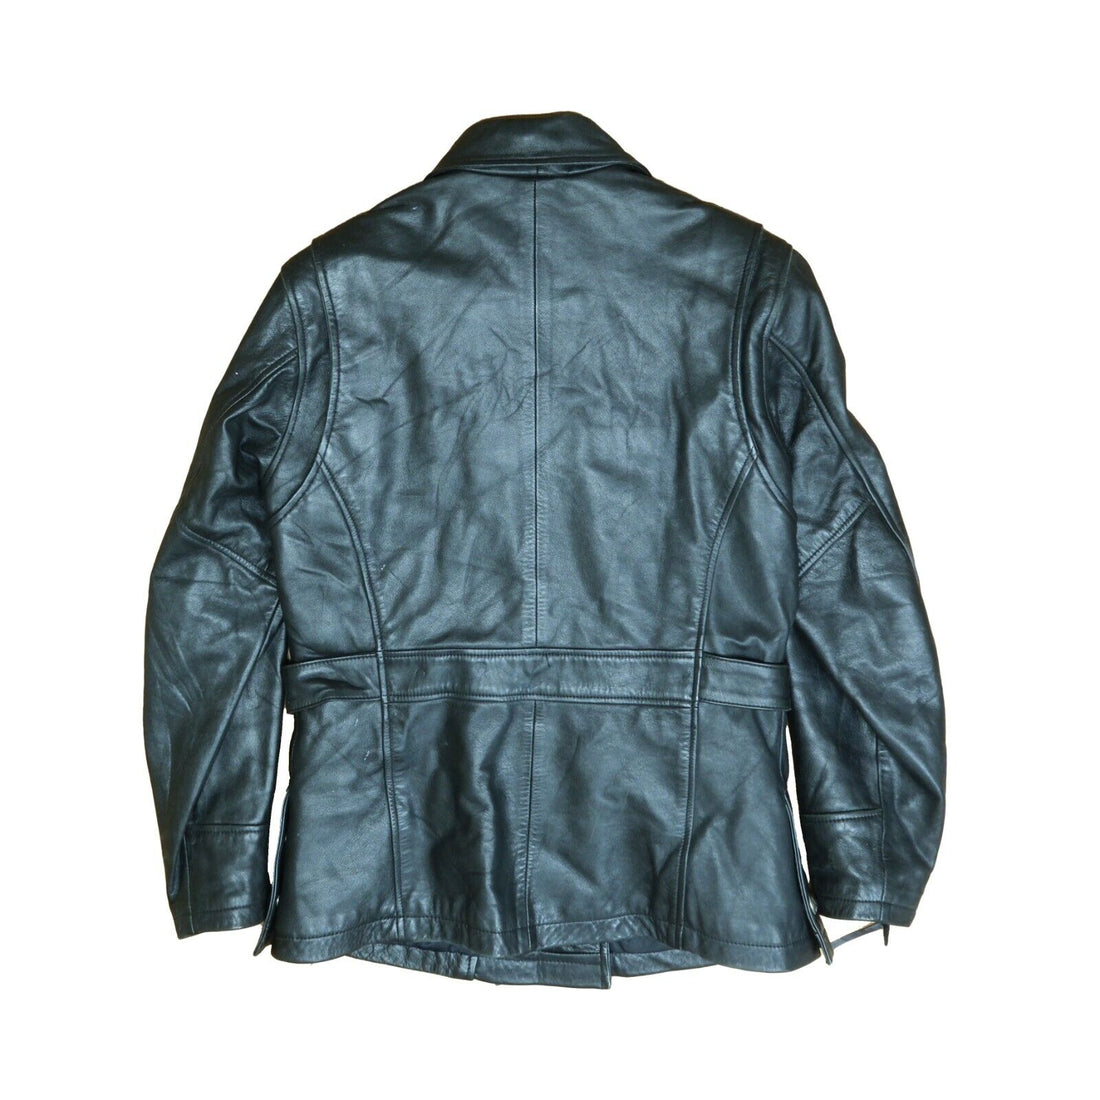 Vintage Harley Davidson Leather Motorcycle Coat Jacket Size Medium